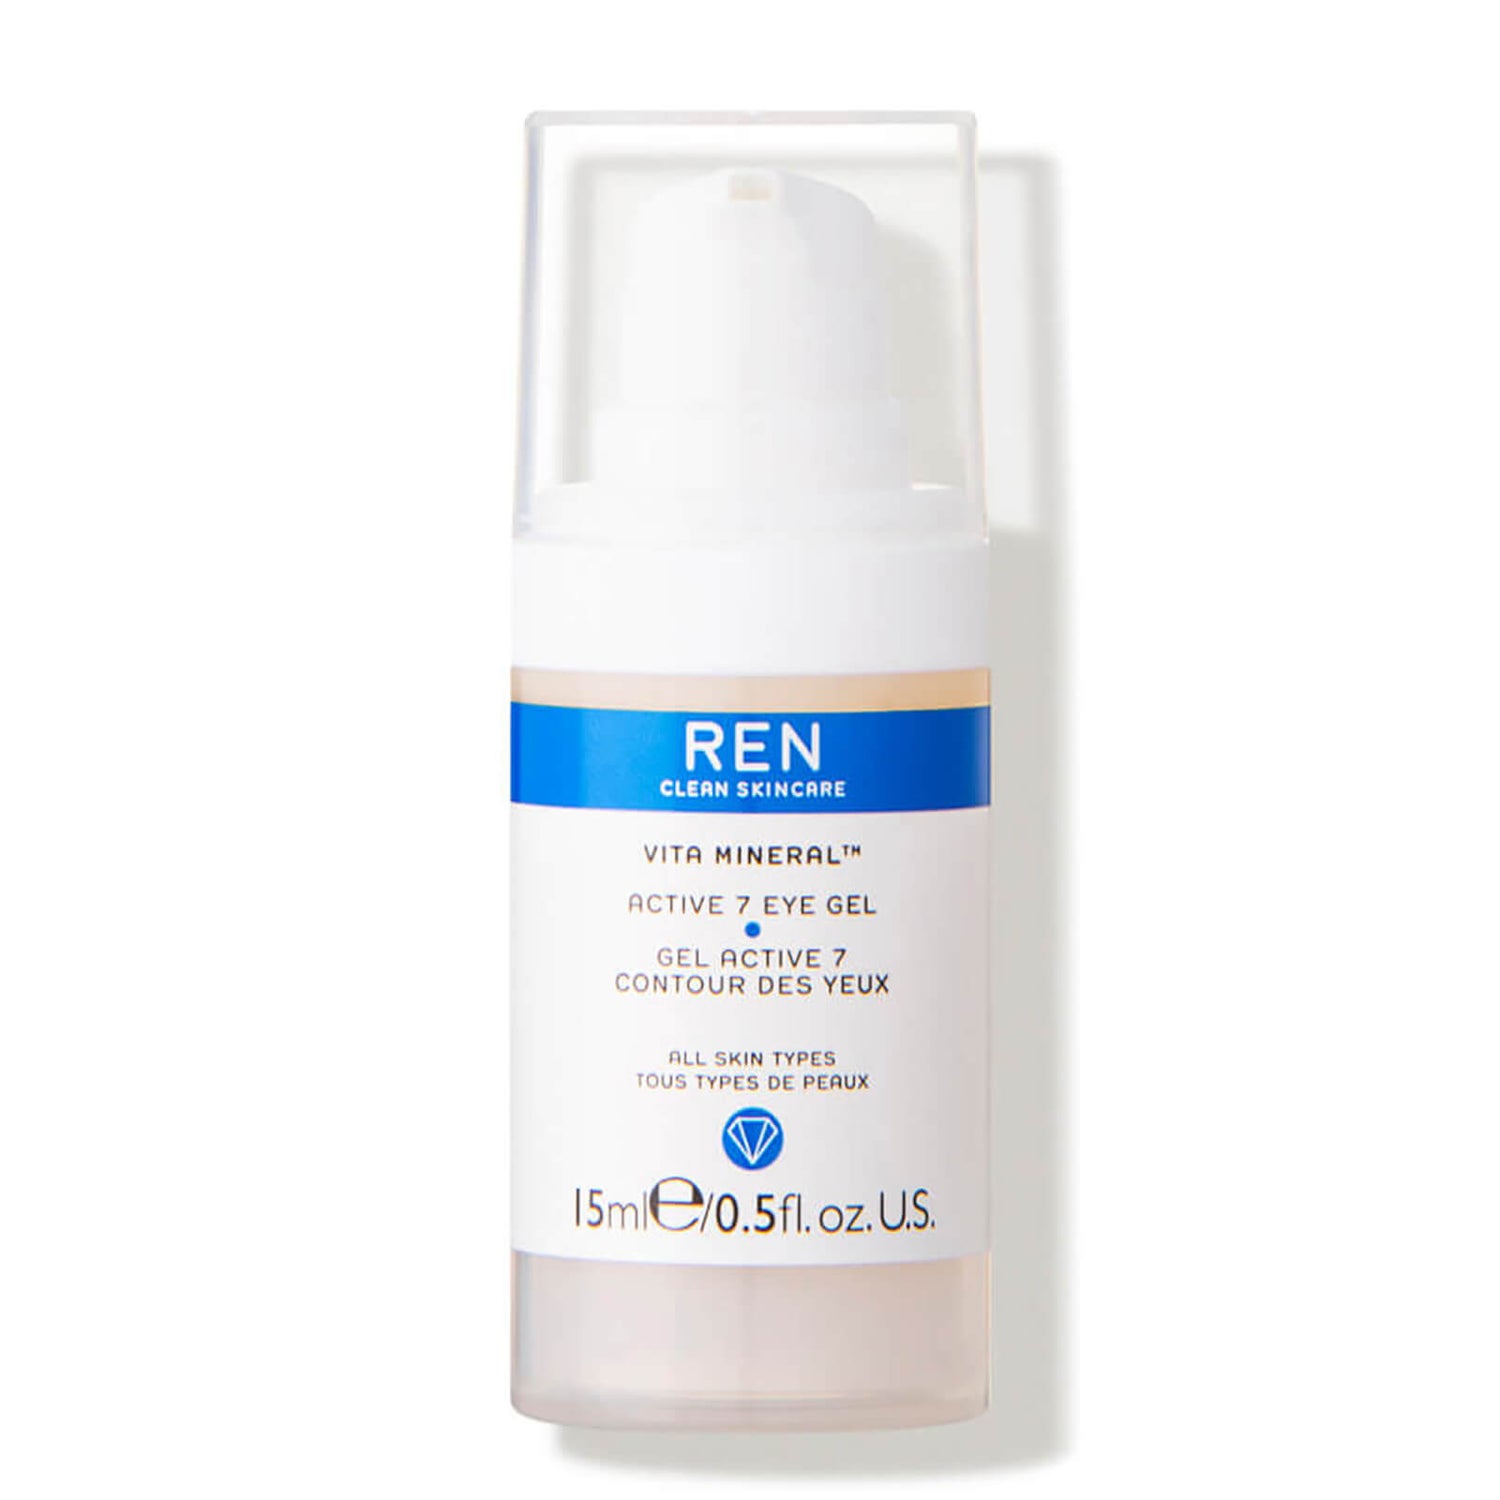 REN Vita Mineral™ Active 7 Eye Gel(렌 비타 미네랄™ 액티브 7 아이 젤)